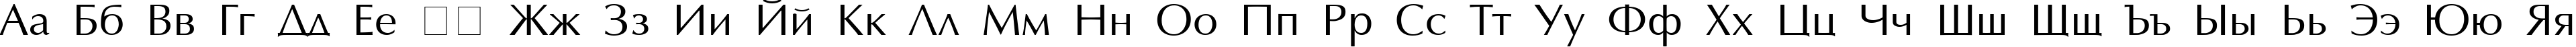 Пример написания русского алфавита шрифтом AGOptimaCyr Roman